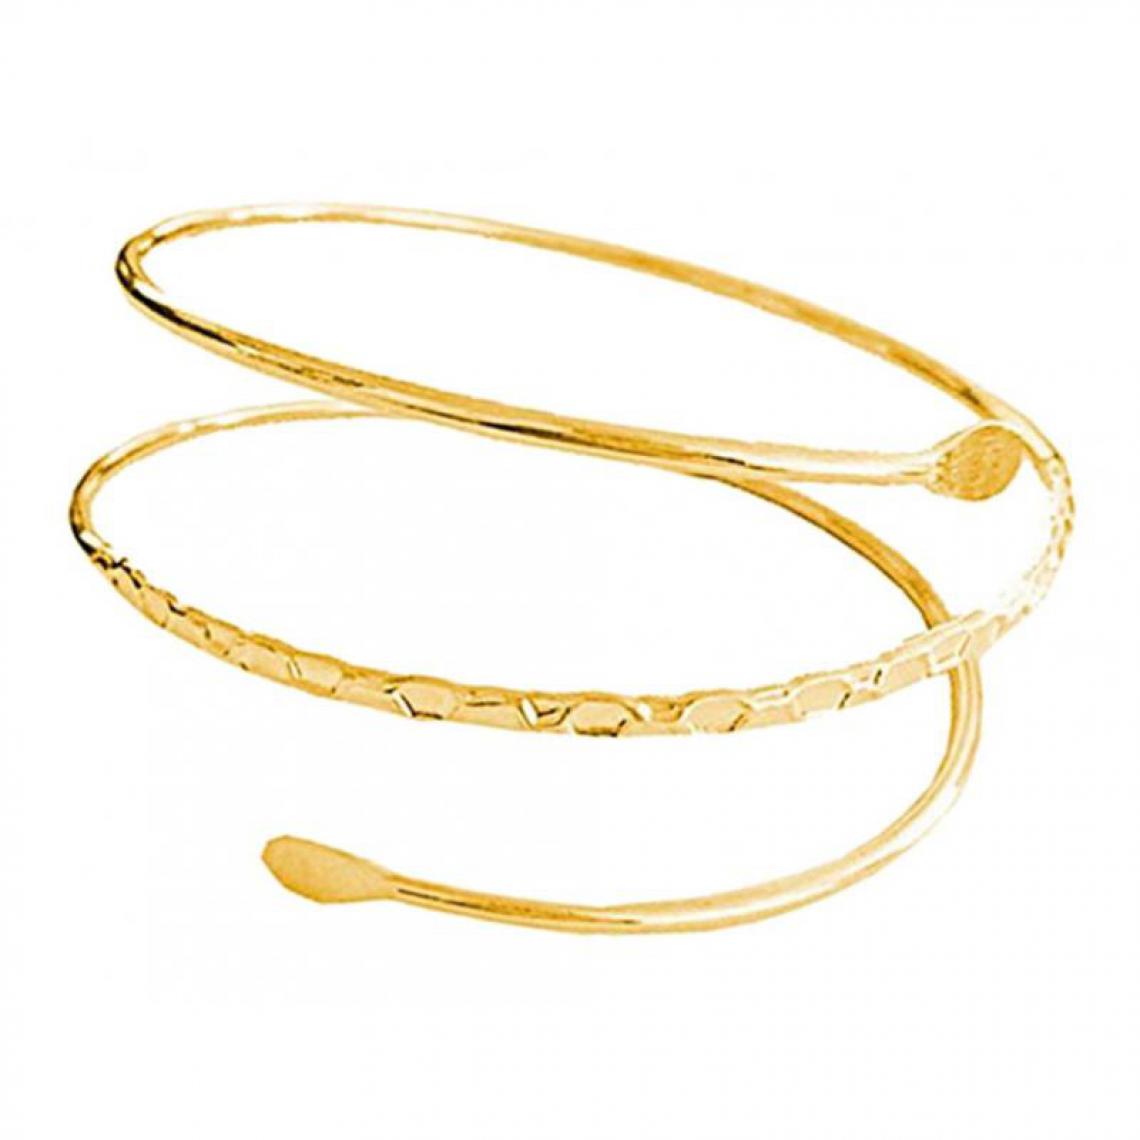 marque generique - Bracelet brassard brassard brassard bracelet doré brassard métal minimaliste - Bracelet connecté